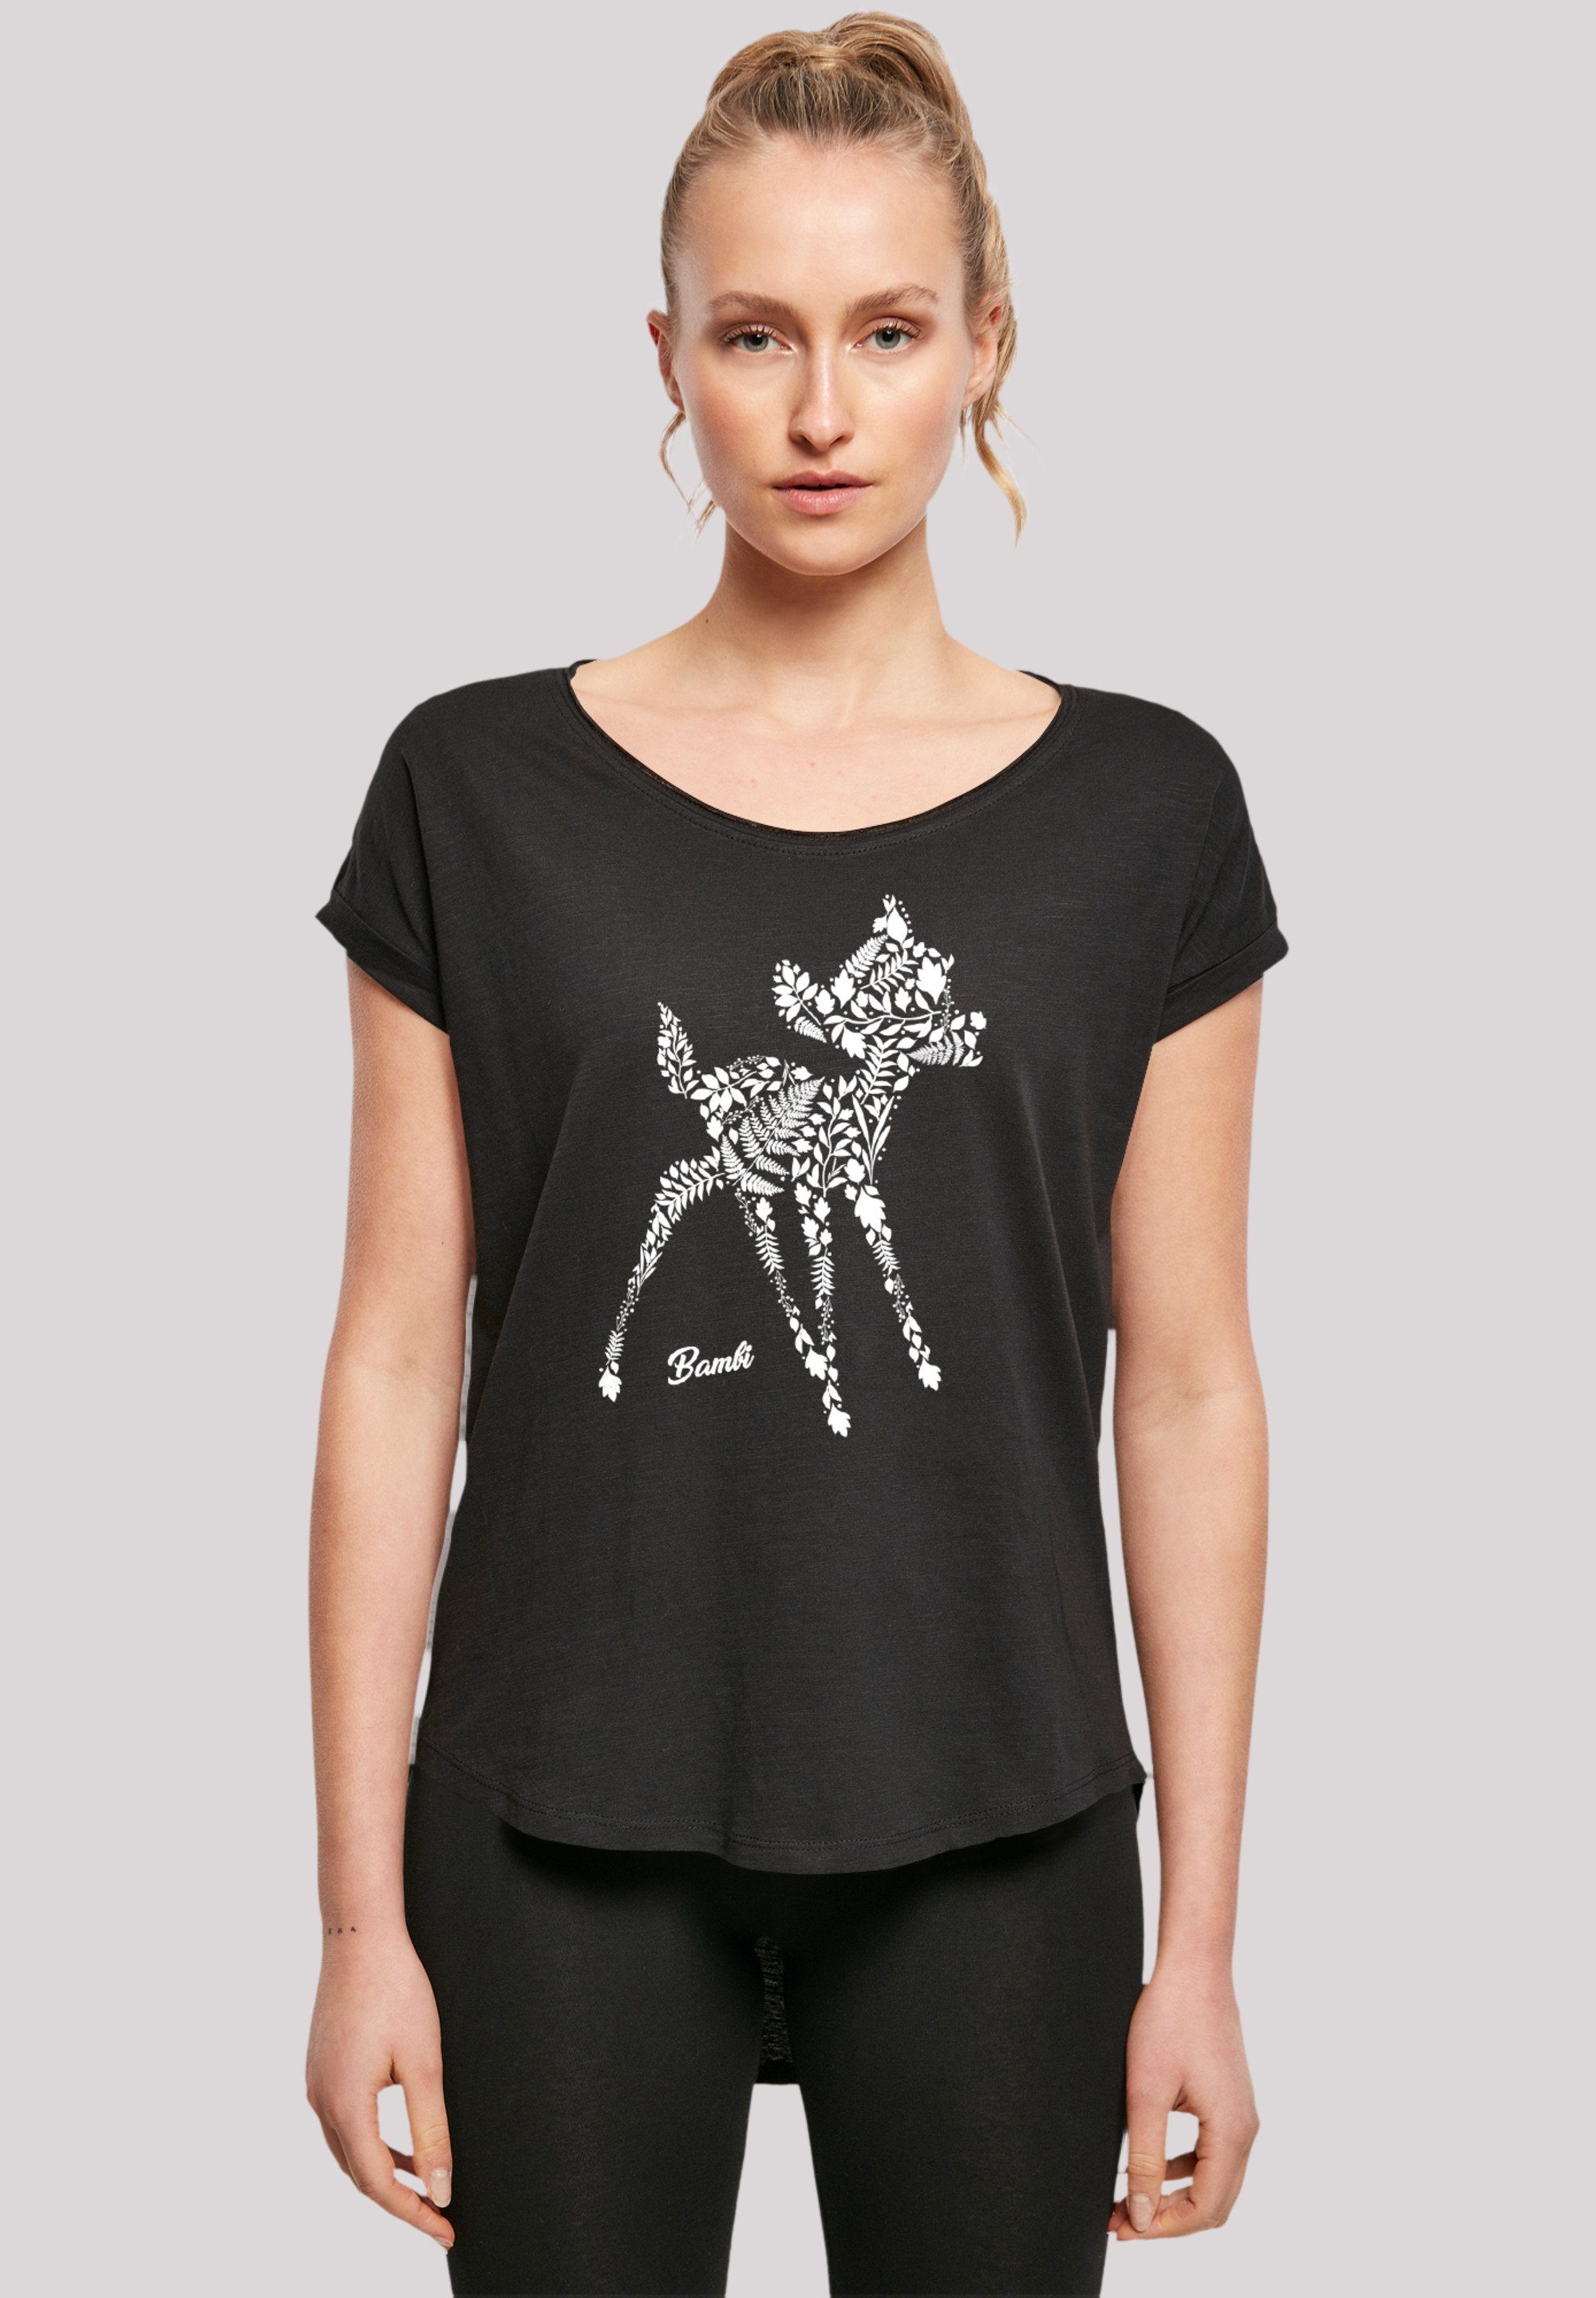 F4NT4STIC T-Shirt Disney Bambi hohem Baumwollstoff Sehr Botanica weicher mit Premium Qualität, Tragekomfort